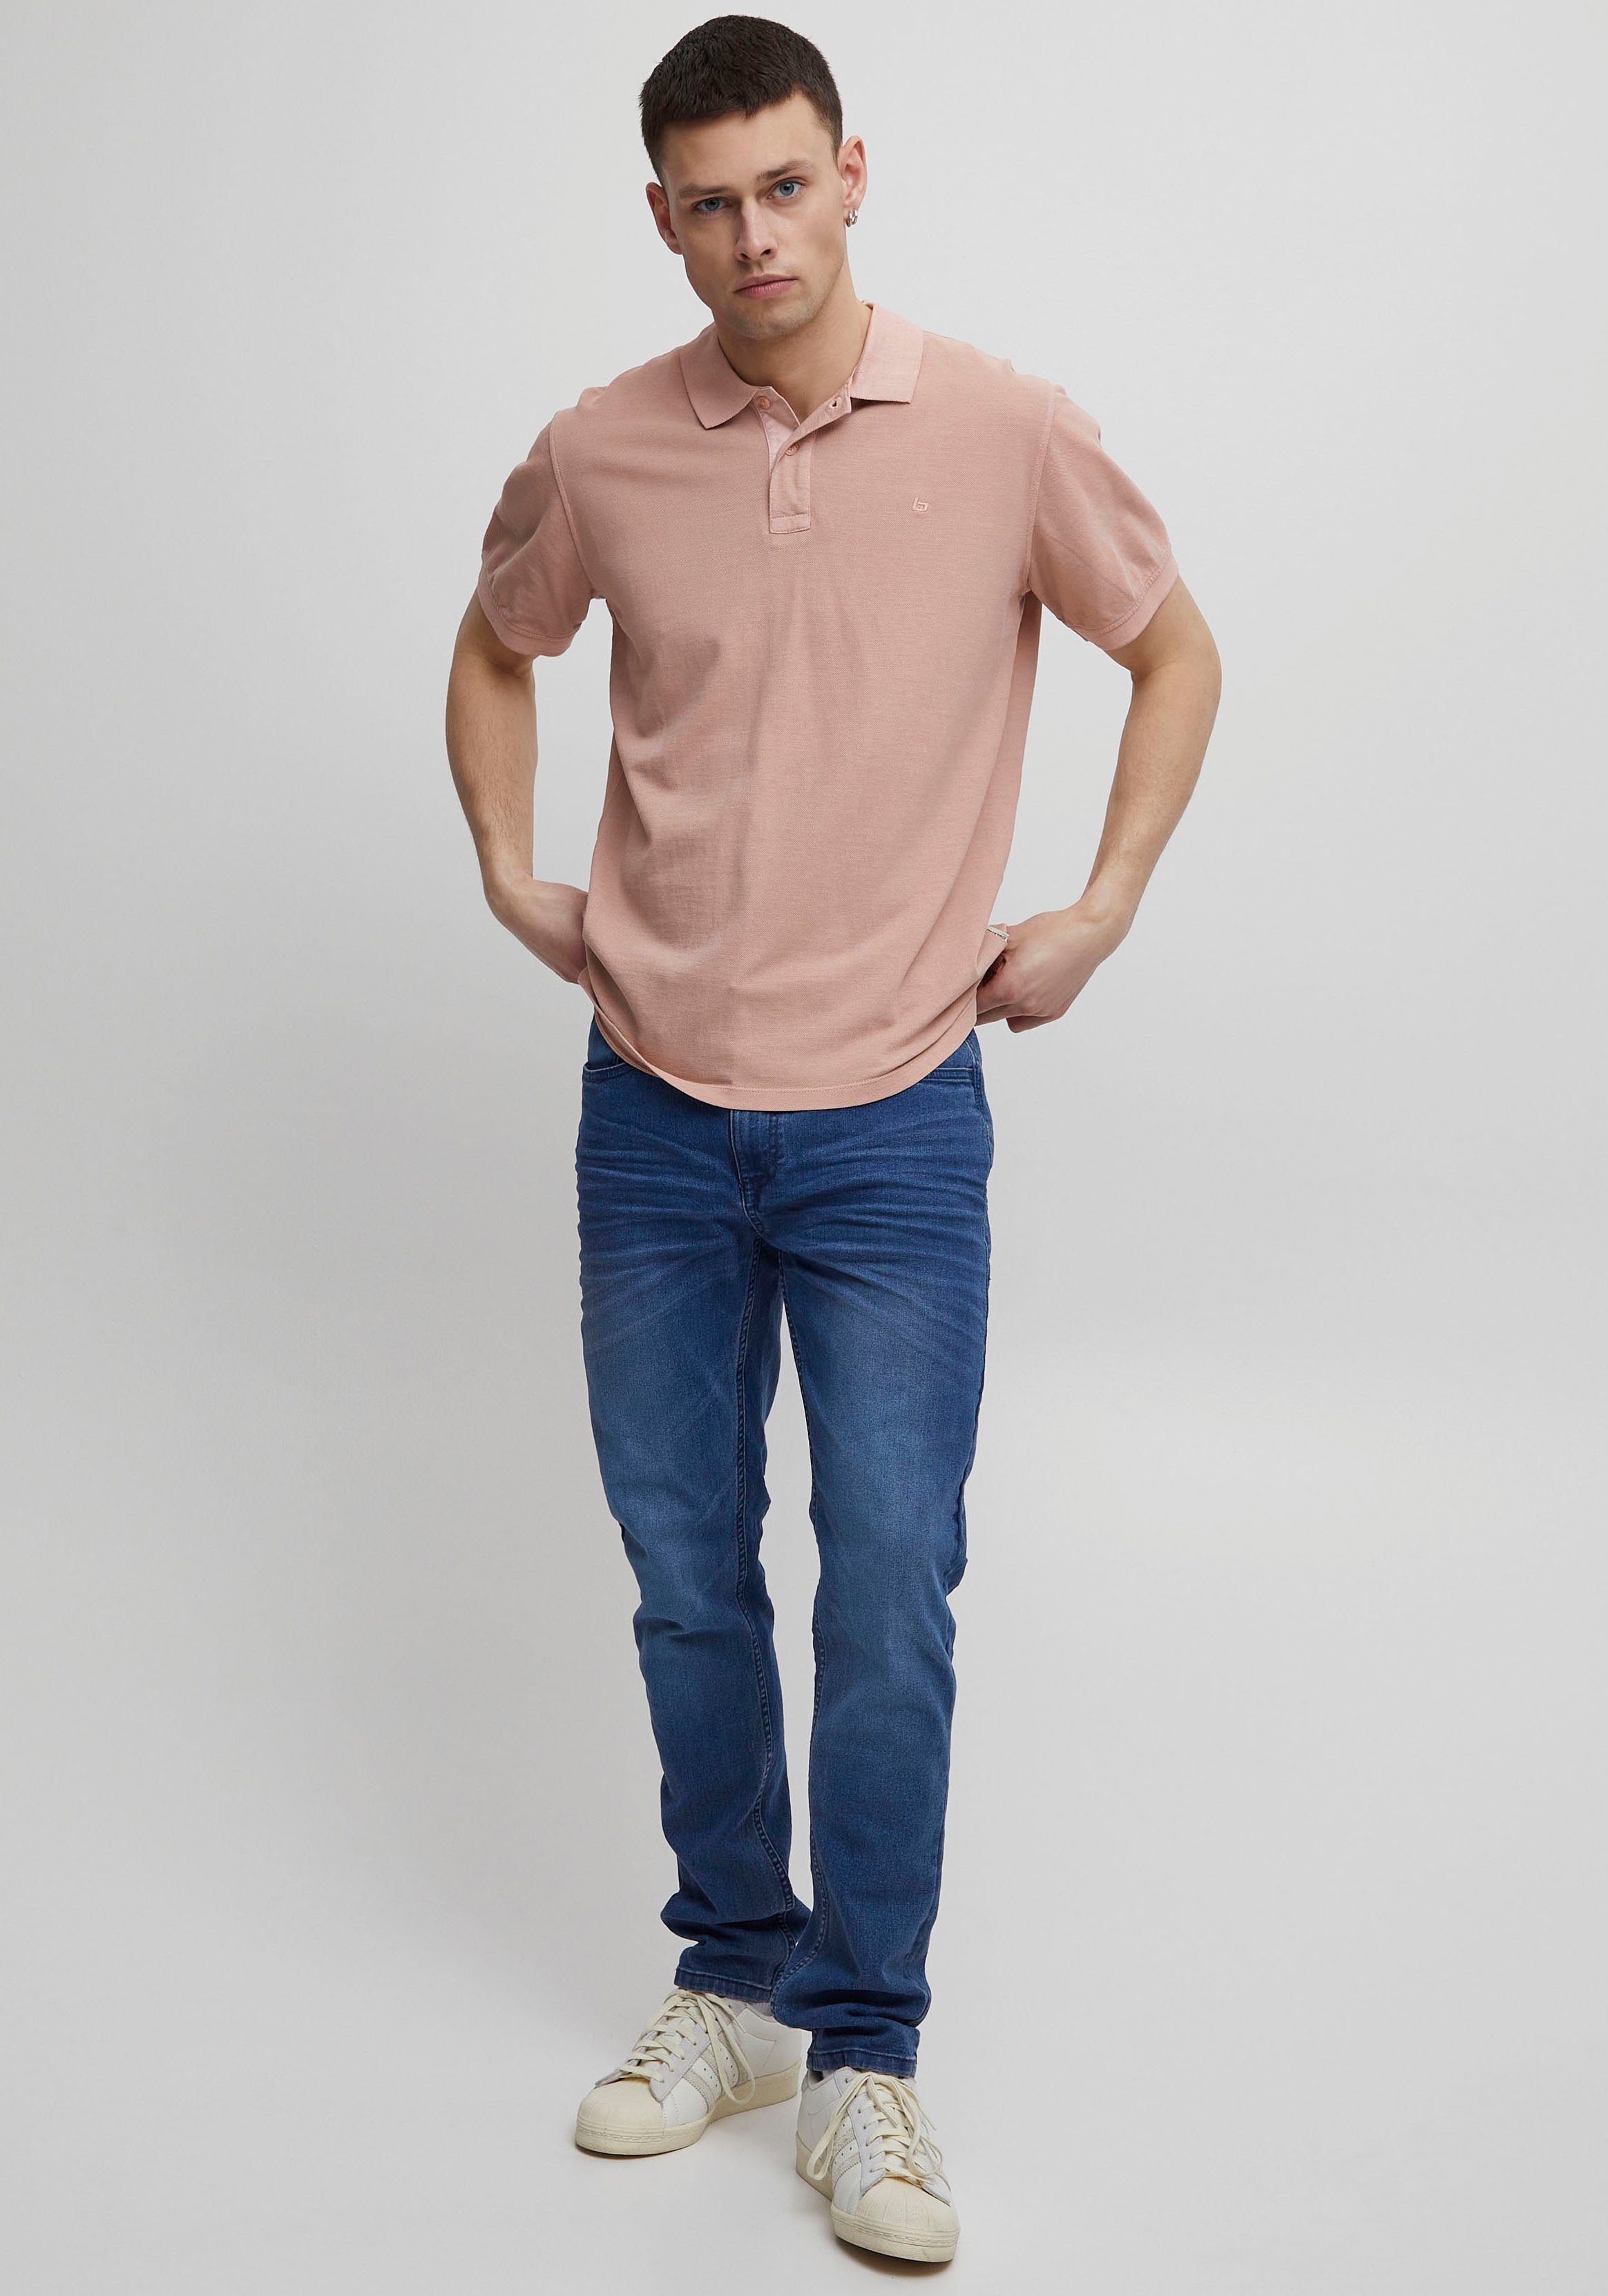 Blend BL-Poloshirt pink Poloshirt